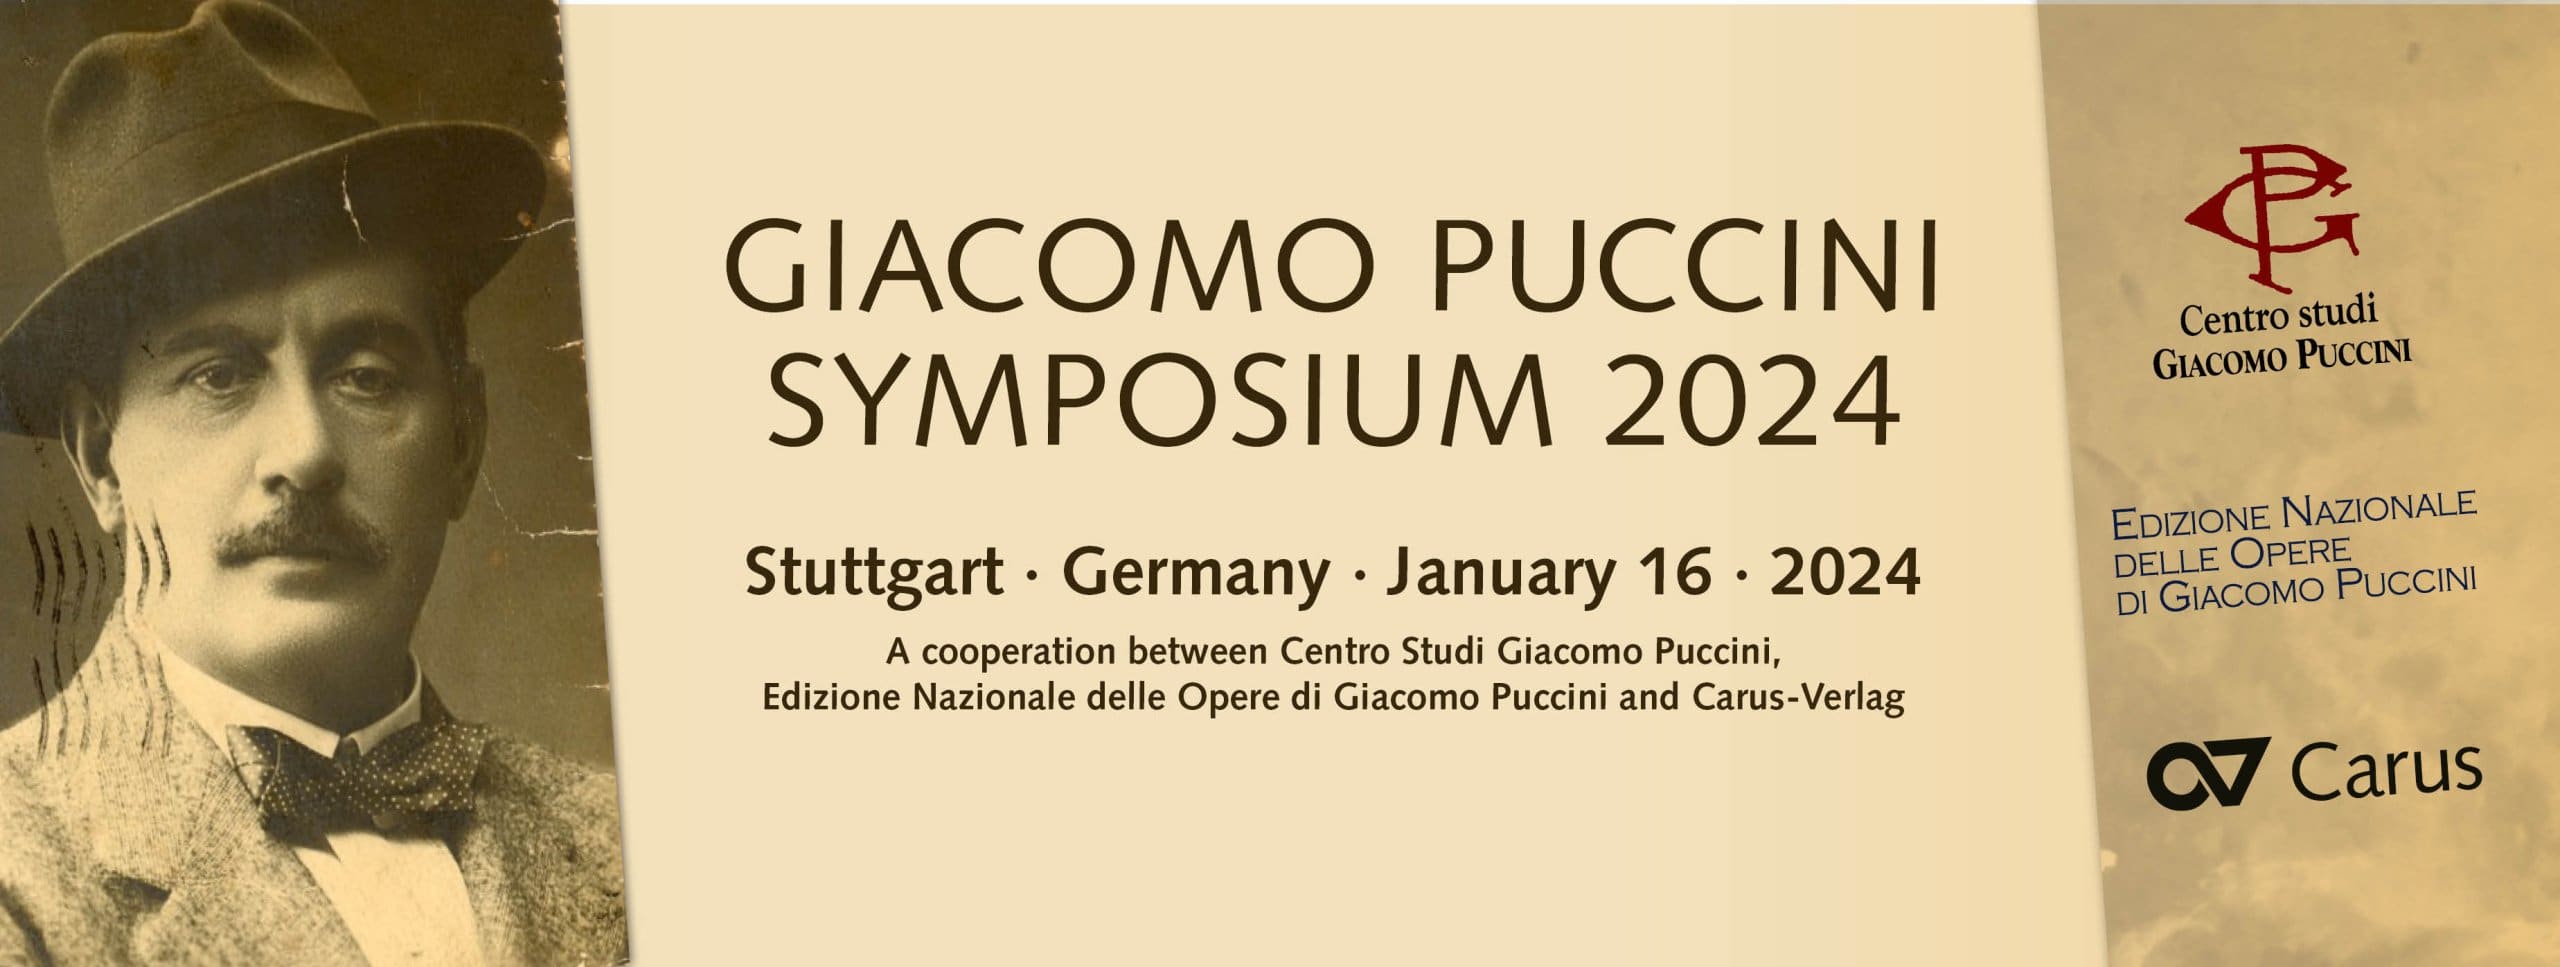 Banner Puccini-Symposium